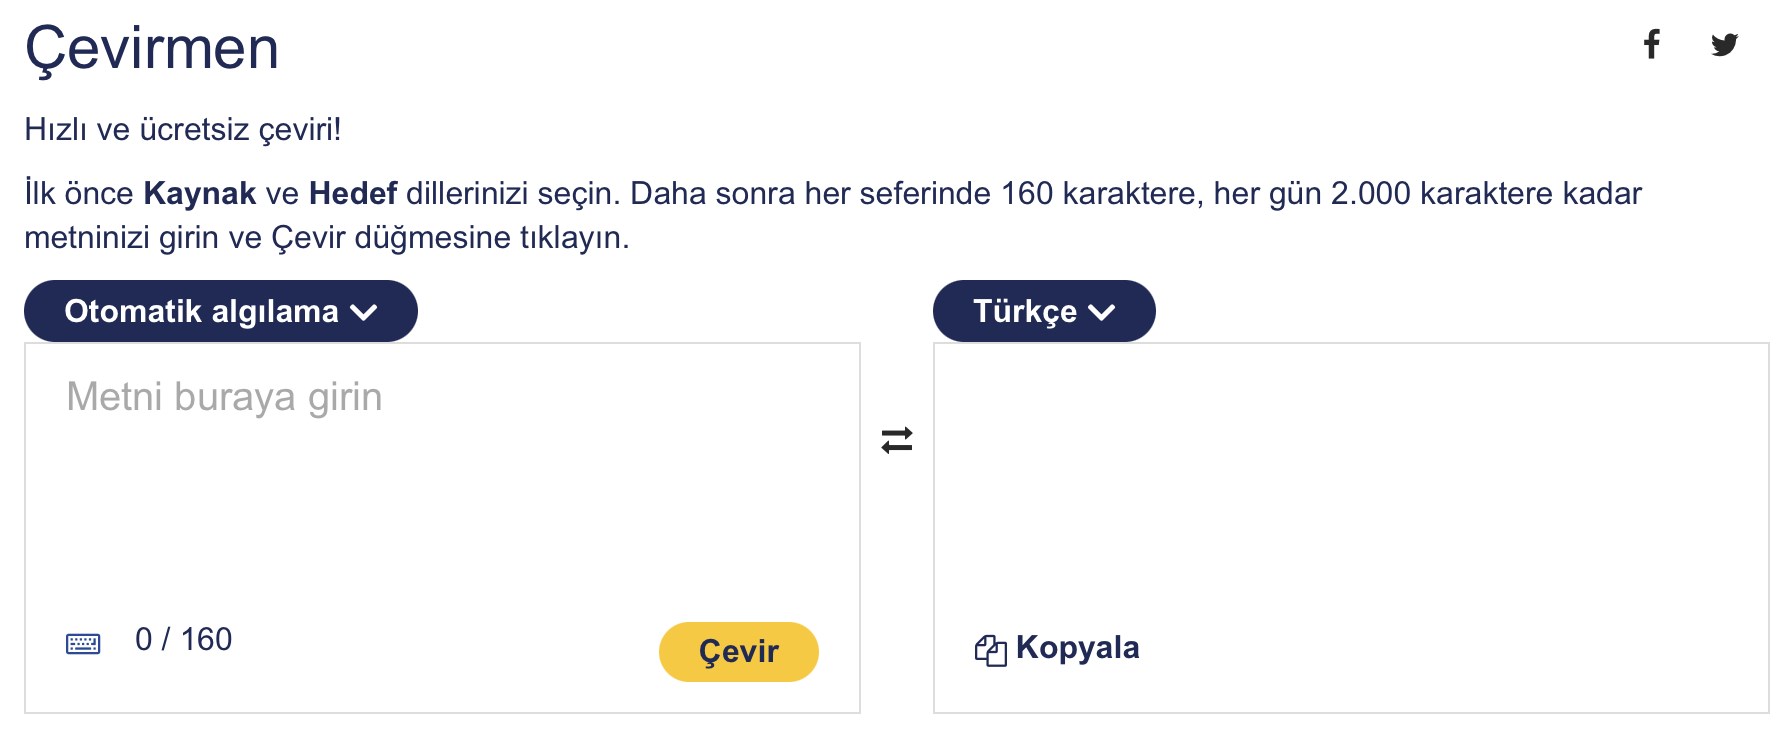 cambridge çeviri ingilizce türkçe sözlük